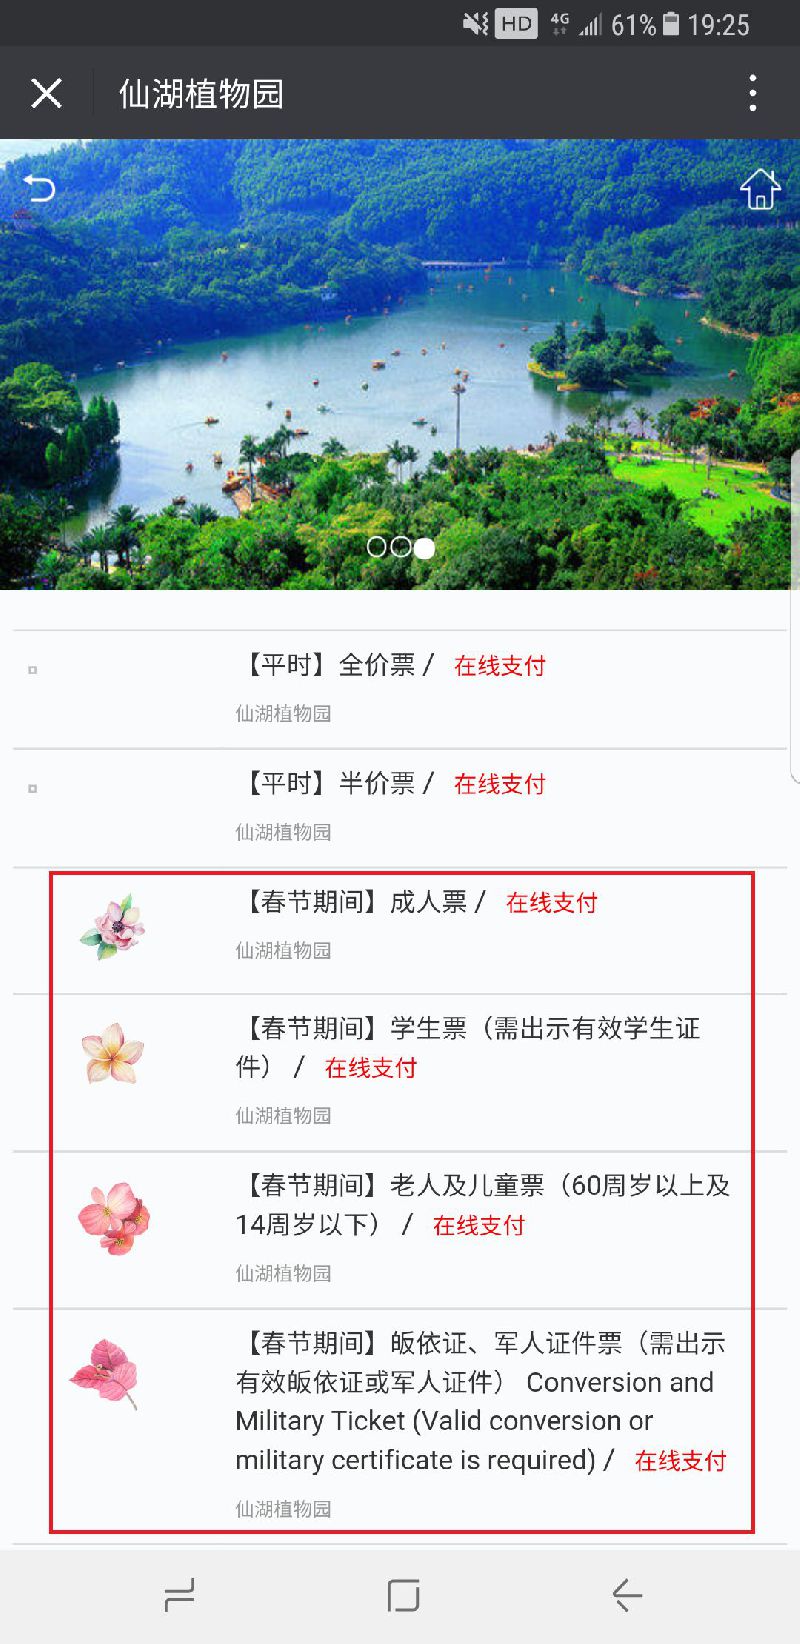 深圳仙湖植物园弘法寺春节元宵节门票预约流程